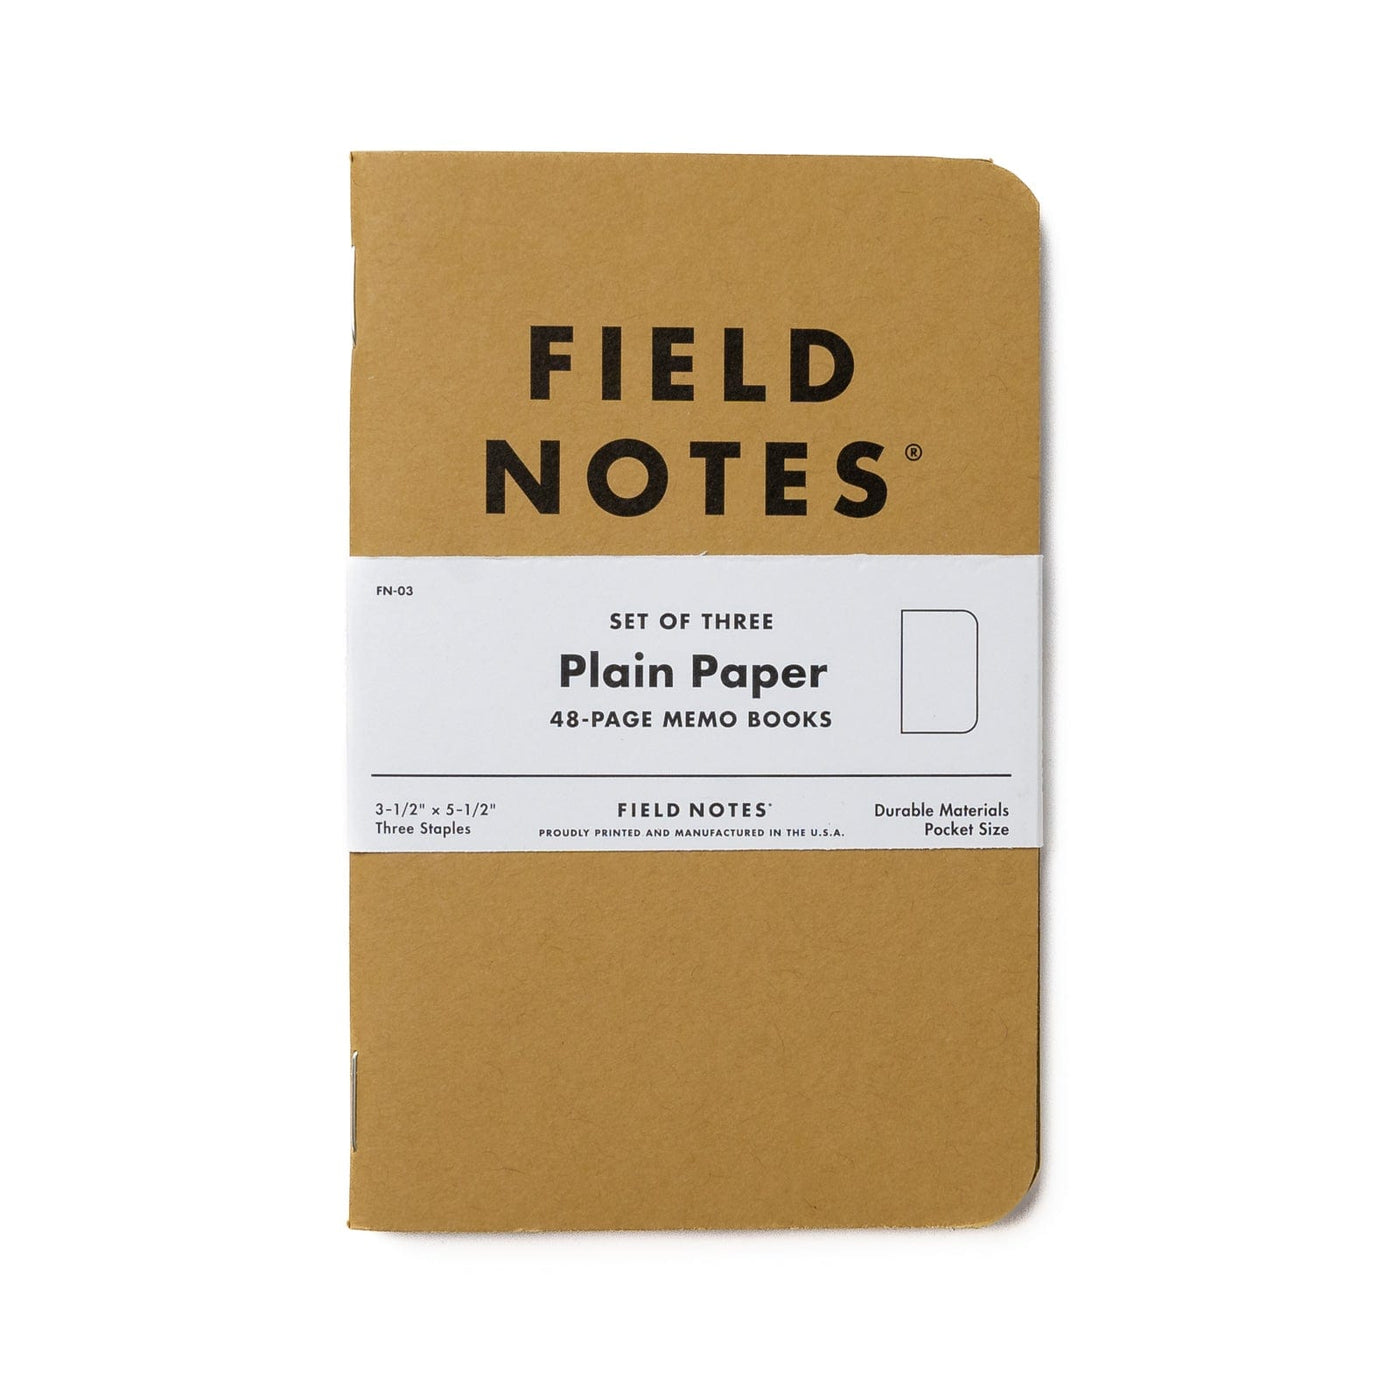 Field Notes Notebooks - Original Kraft Field Notes